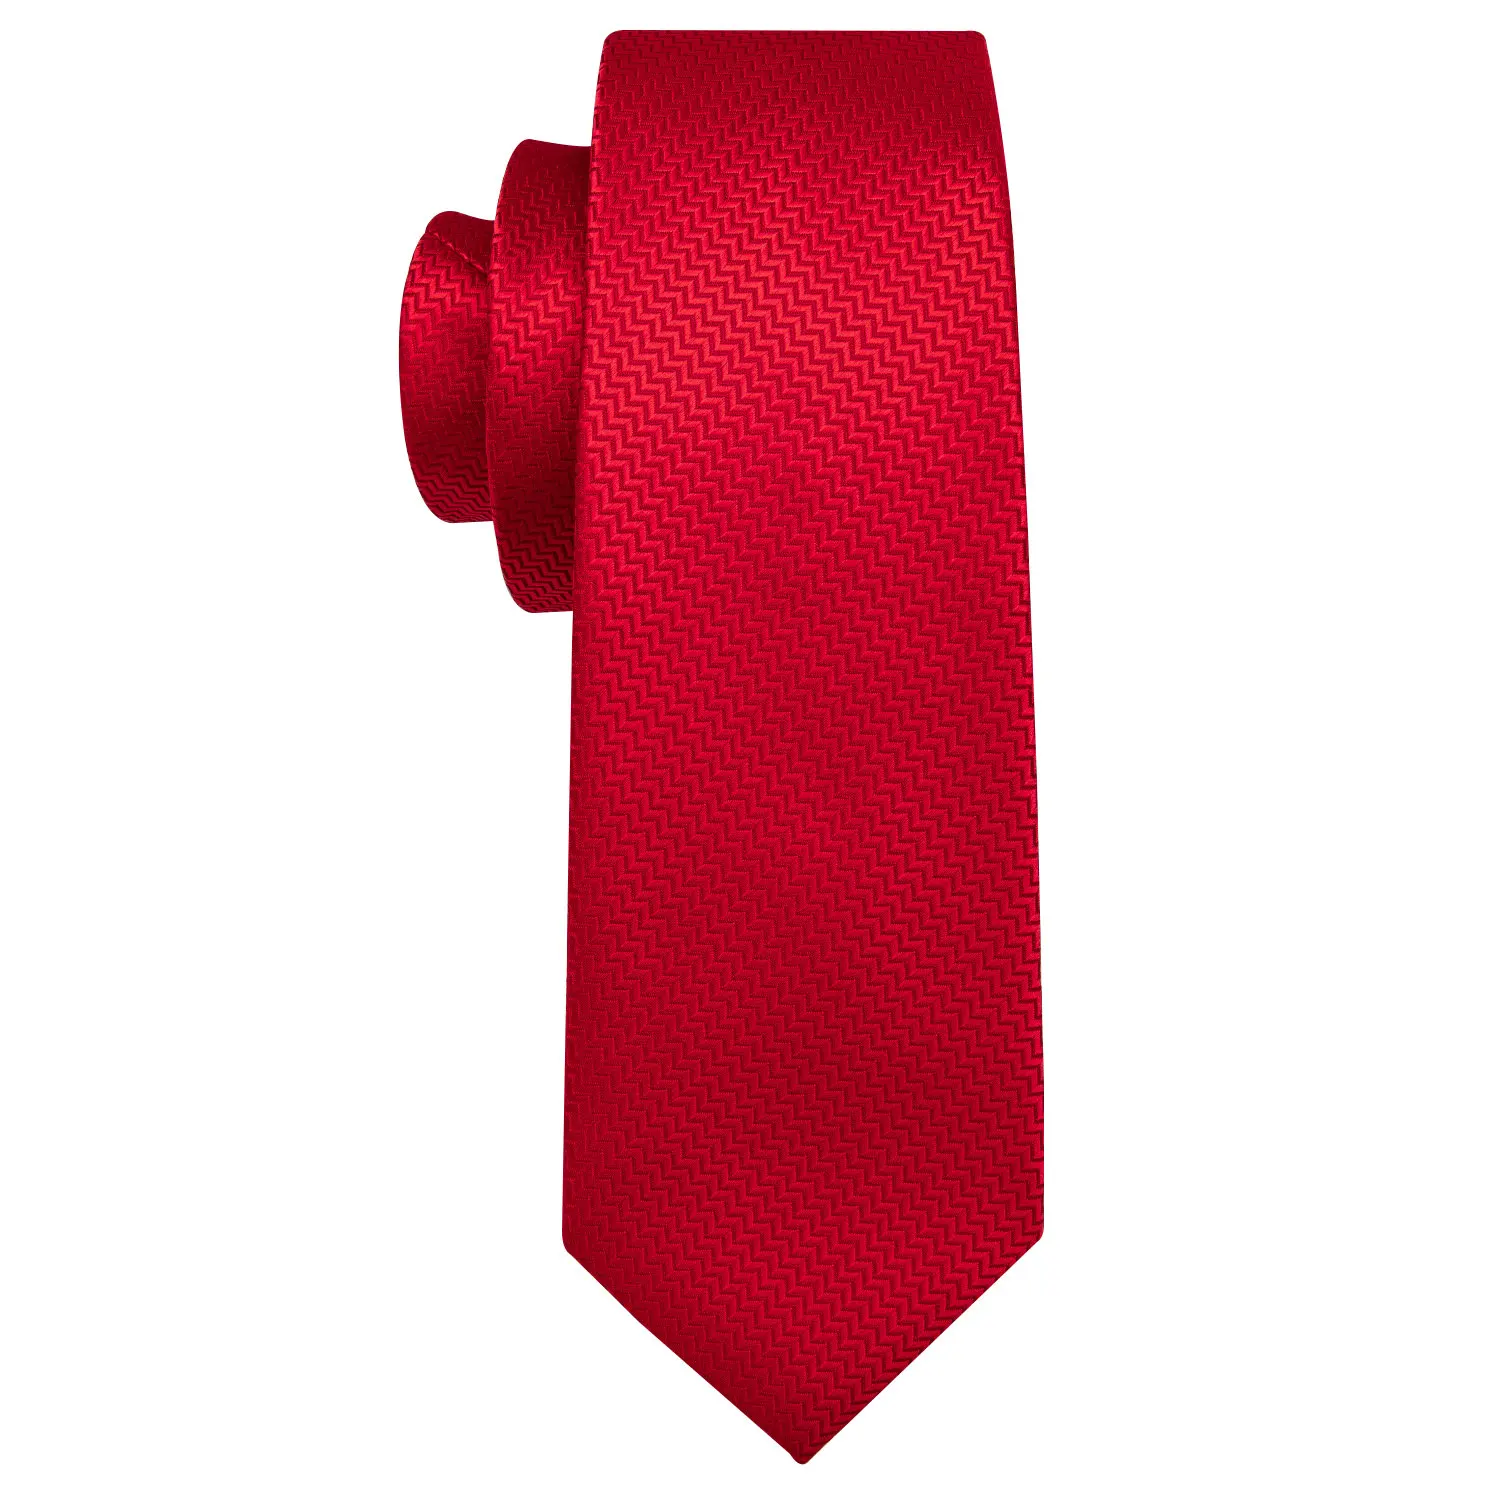 Мужской галстук набор красный цветочный Шелковый галстук для мужчин галстук для свадебной вечеринки платок широкий галстук набор Барри. Ван модный галстук LS-5198